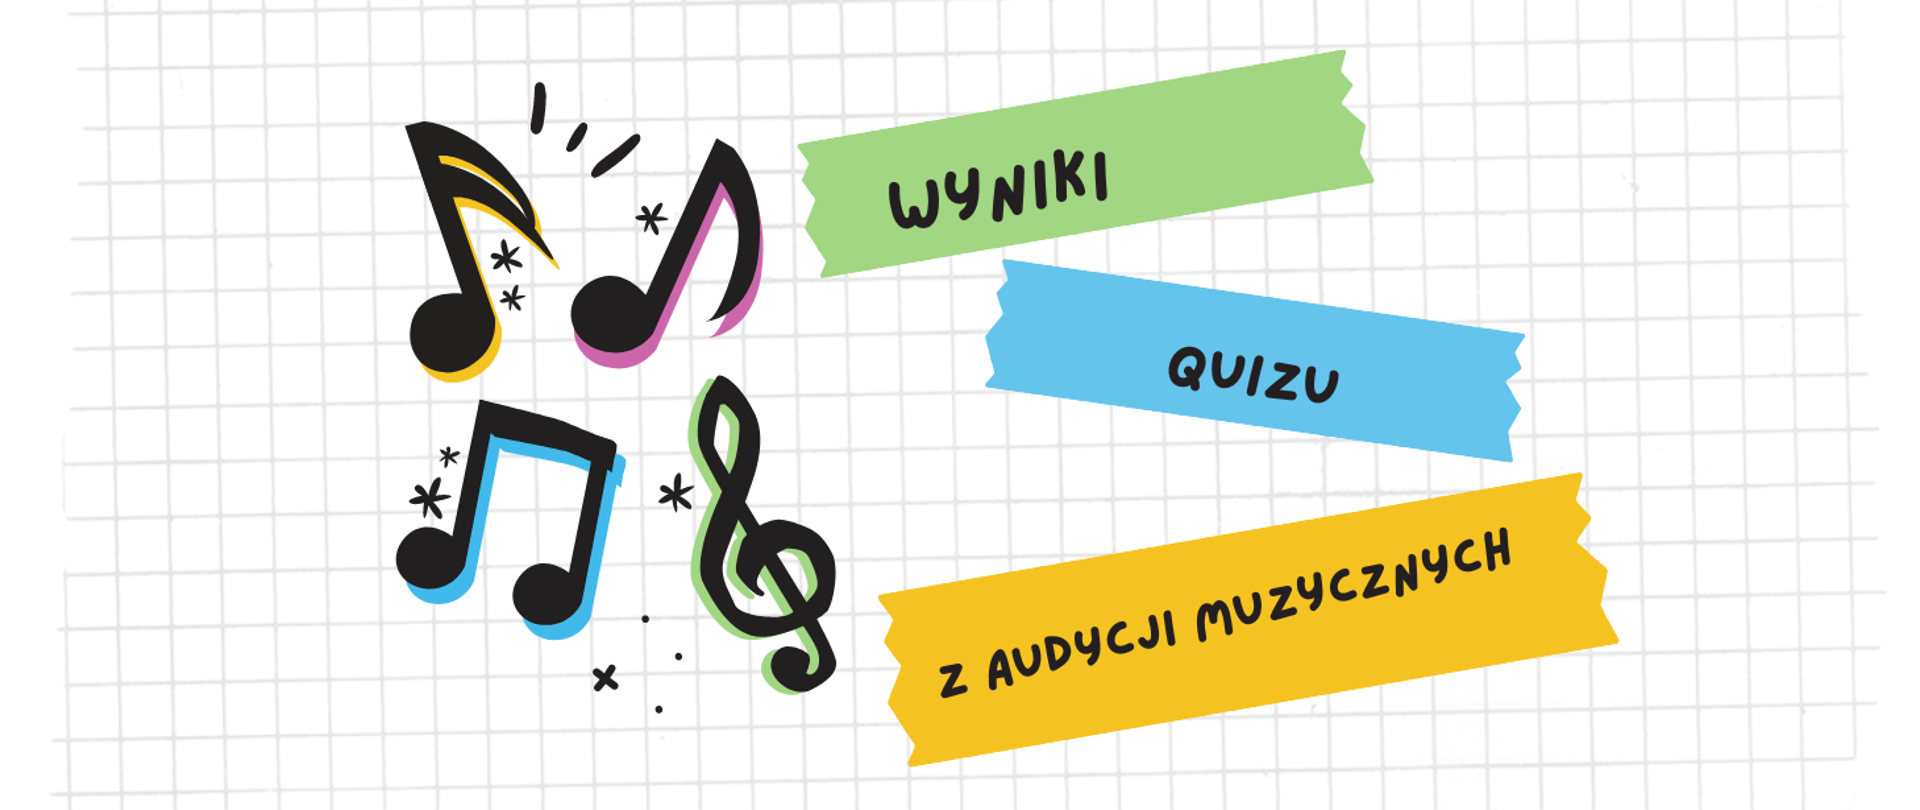 Plansza przedstawiające kartę w kratkę, z lewej strony 4 kolorowe nuty, z prawej strony w nieregularnych figurach tekst: wyniki quizu z audycji muzycznych.